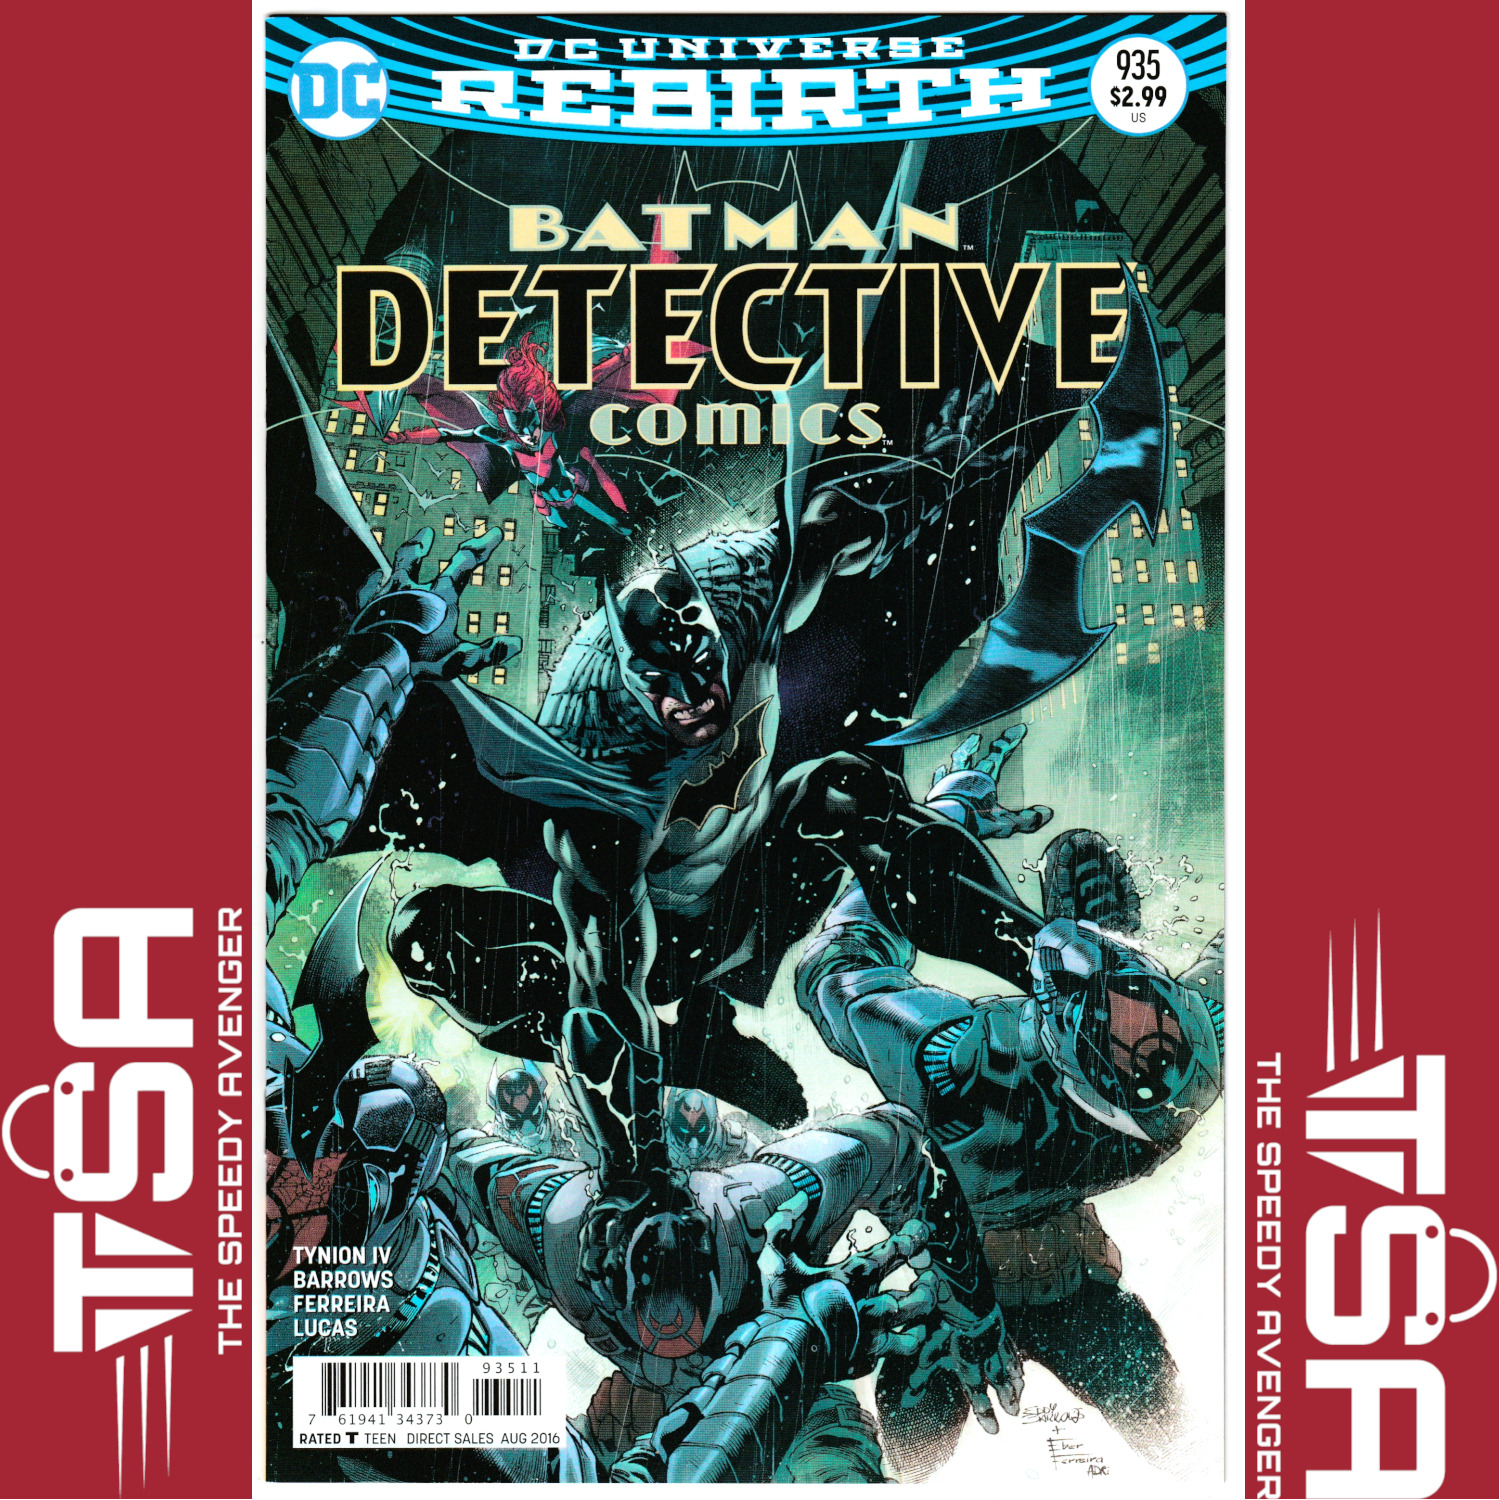 BATMAN DETECTIVE COMICS #935 (Vol 3) Eddy Barrows Regular Cover 2016 DC Comics